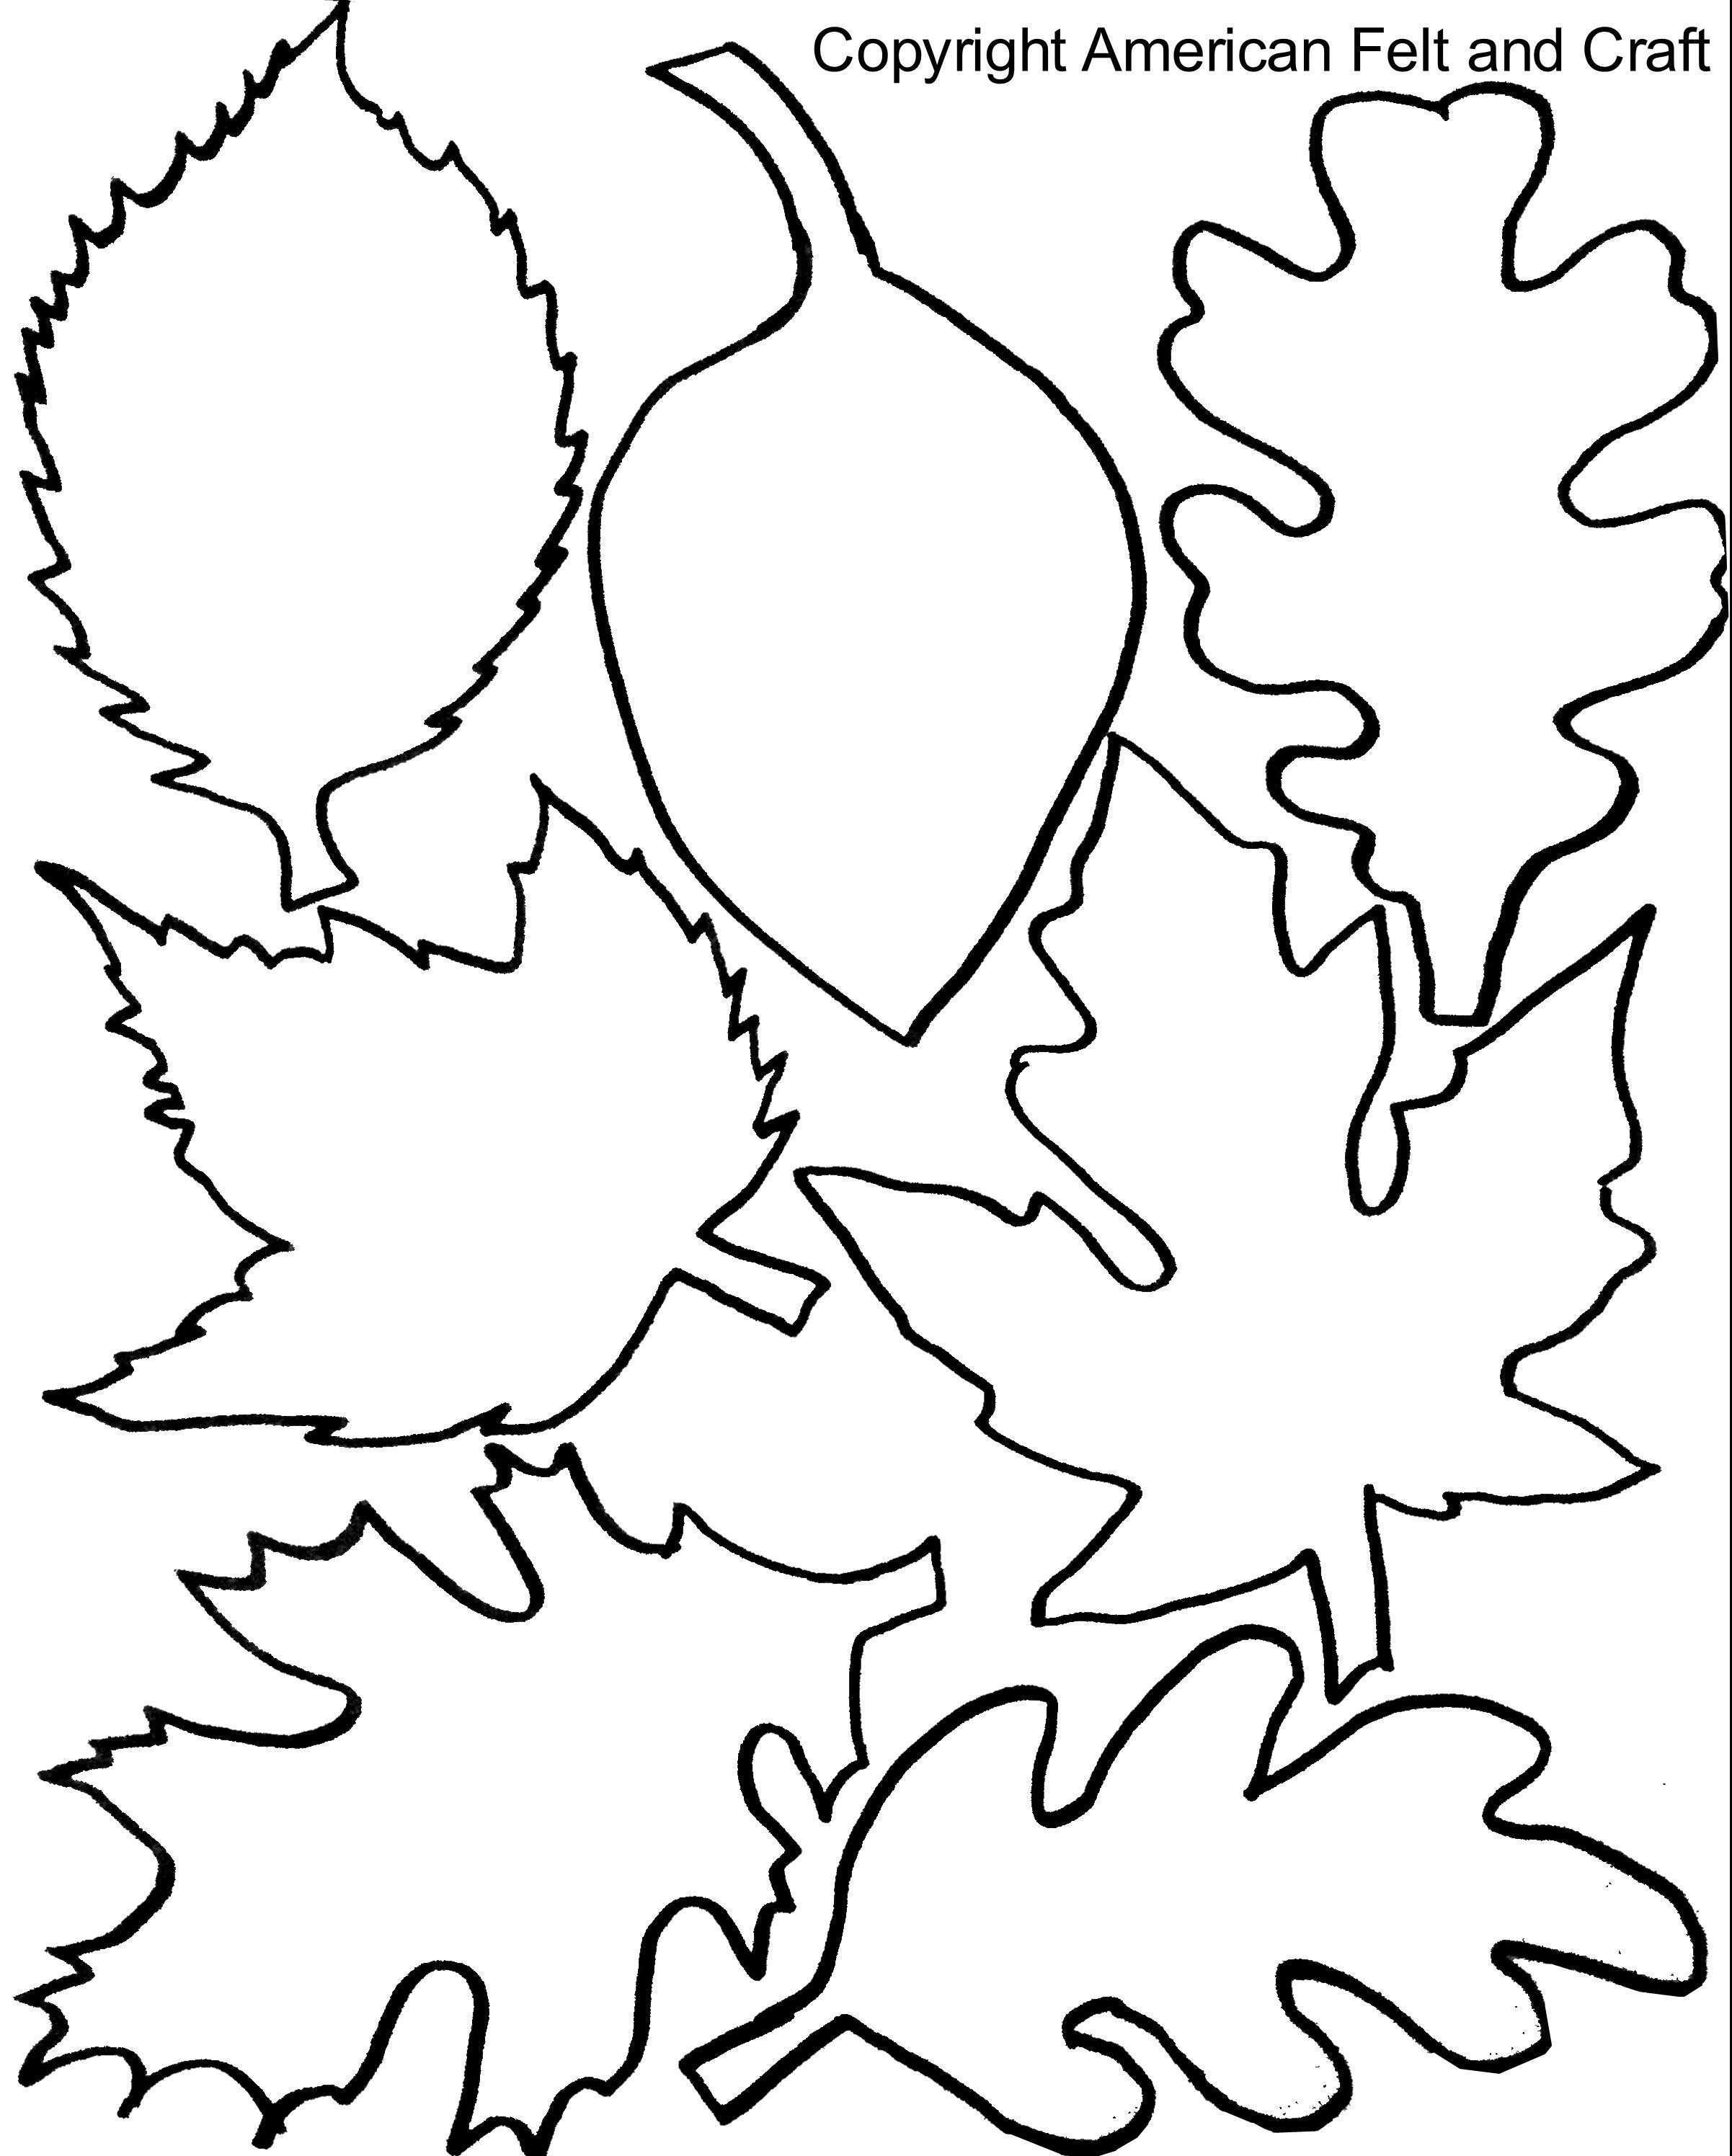 Fall Felt Leaves With Templates Mit Bildern Herbst Ausmalvorlagen Blatt Schablone Papierblumenvorlagen